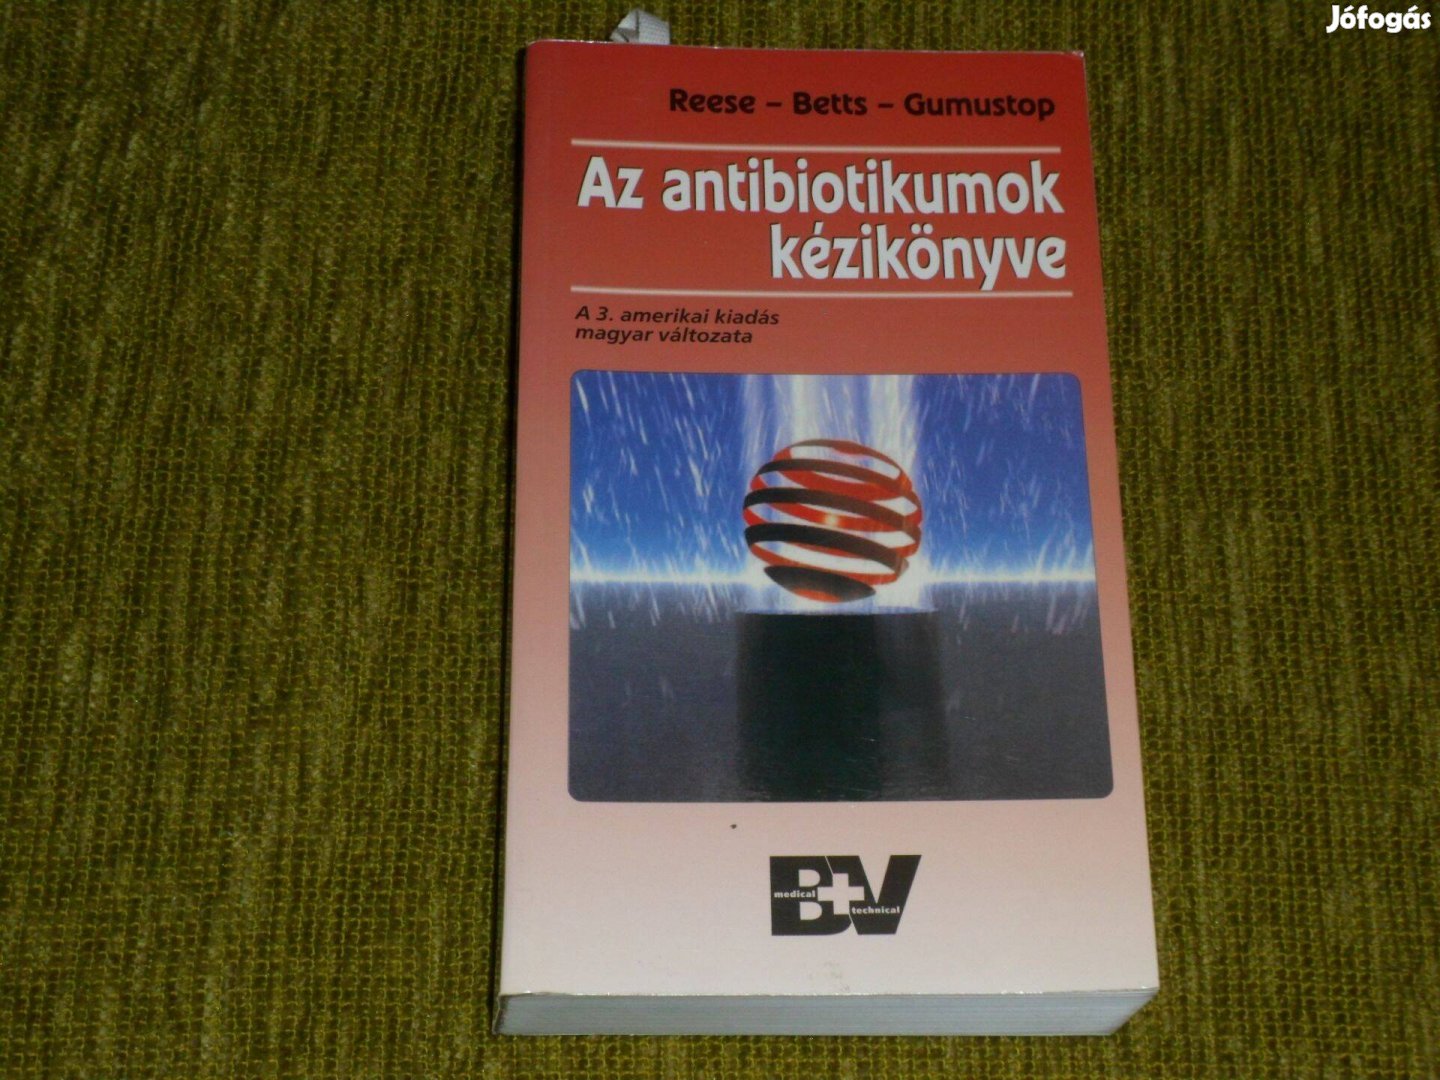 Reese - Betts - Gumustop: Az antibiotikumok kézikönyve